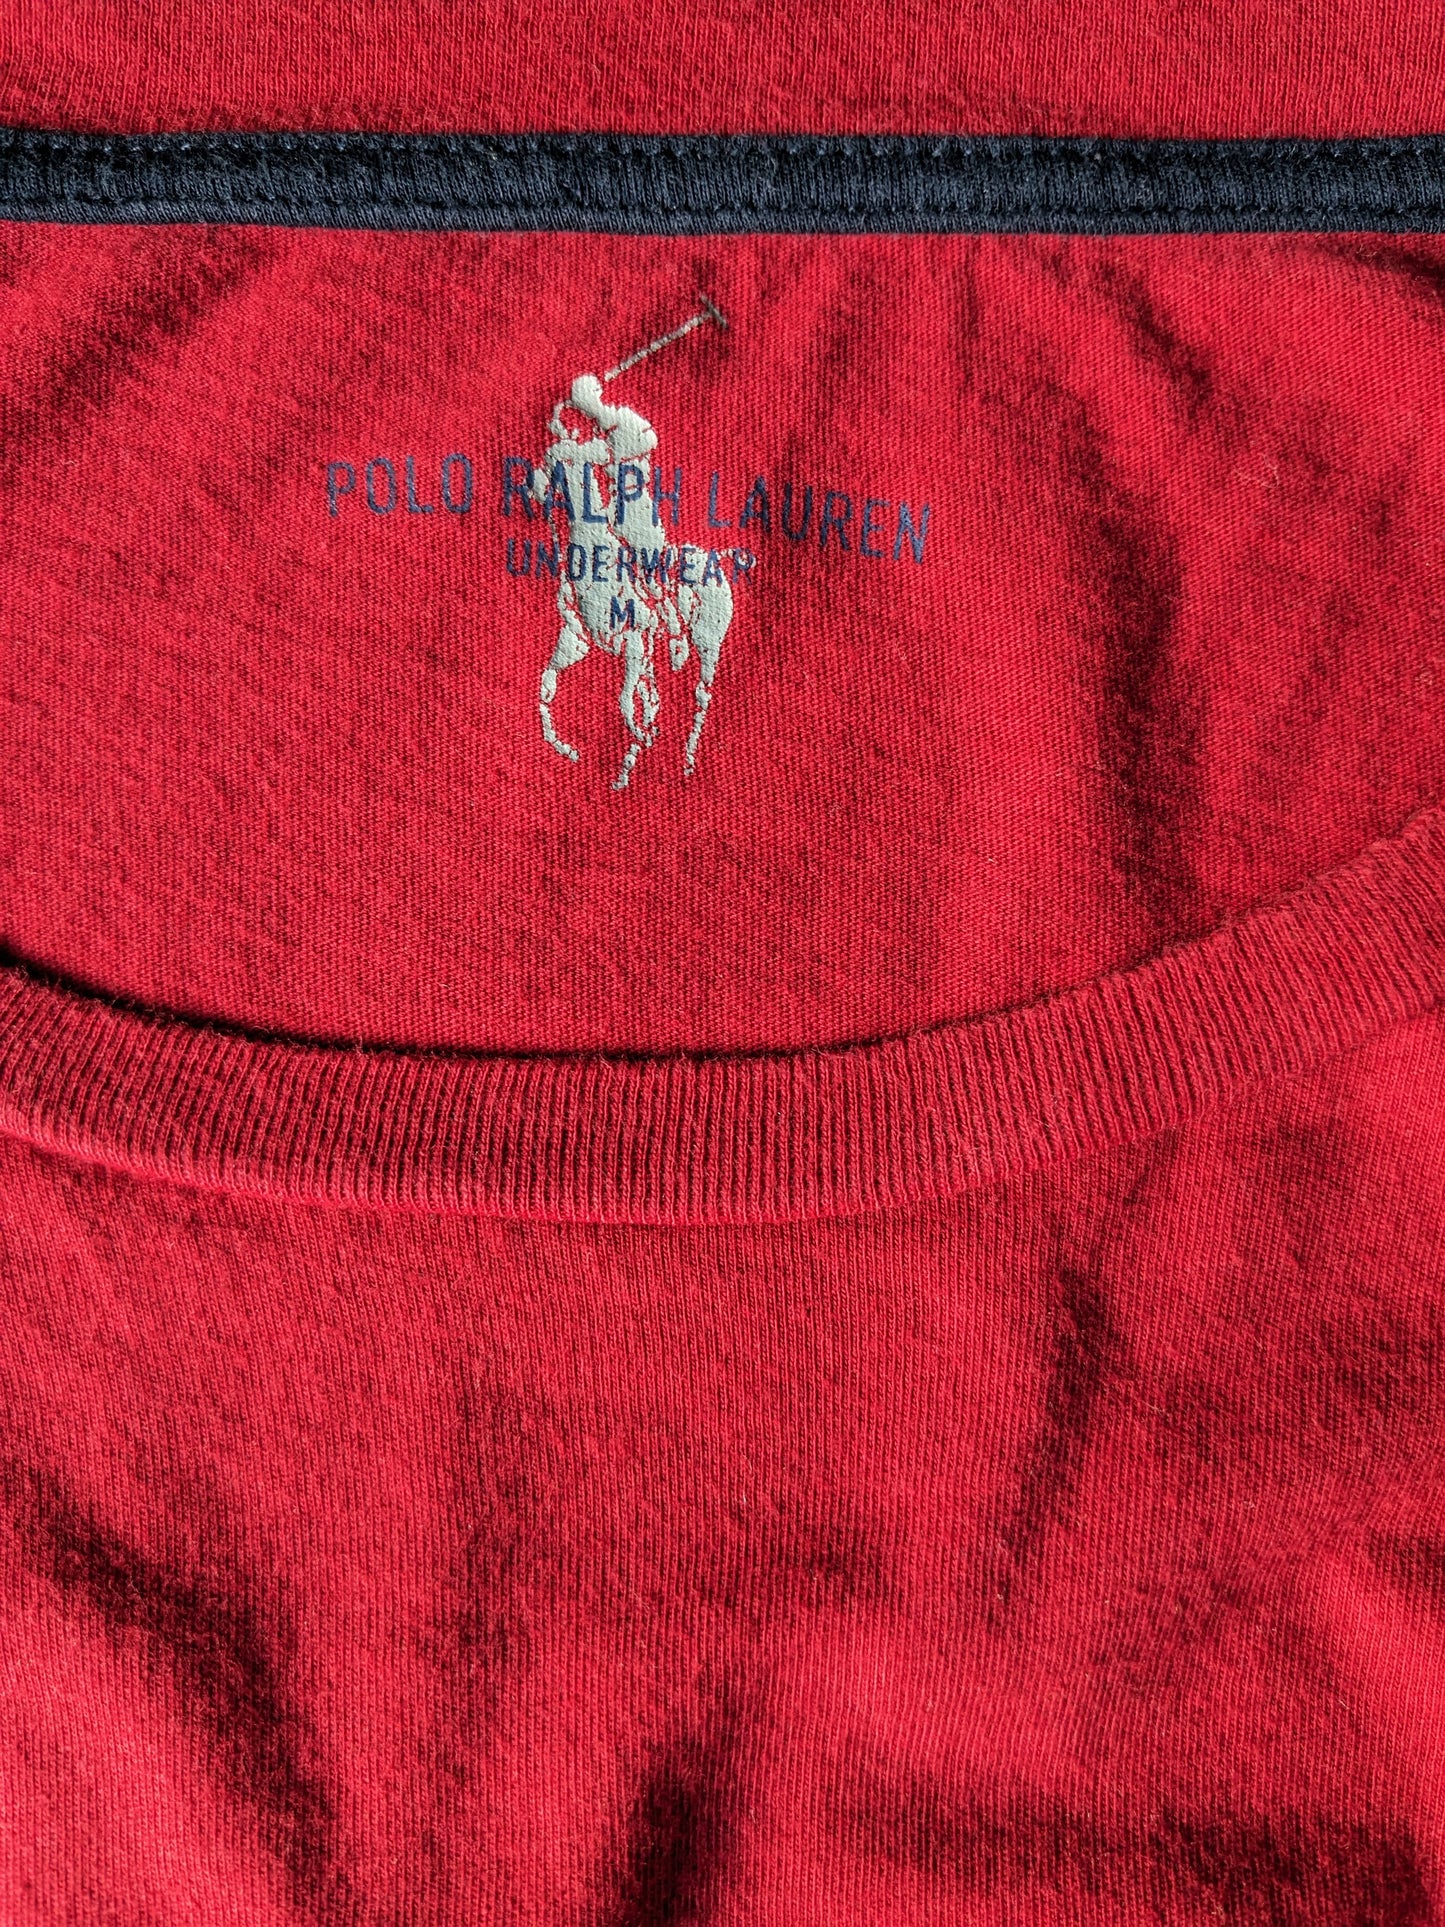 Polo Ralph Lauren sous-vêtements Longsleeve. Rouge coloré. Taille M.